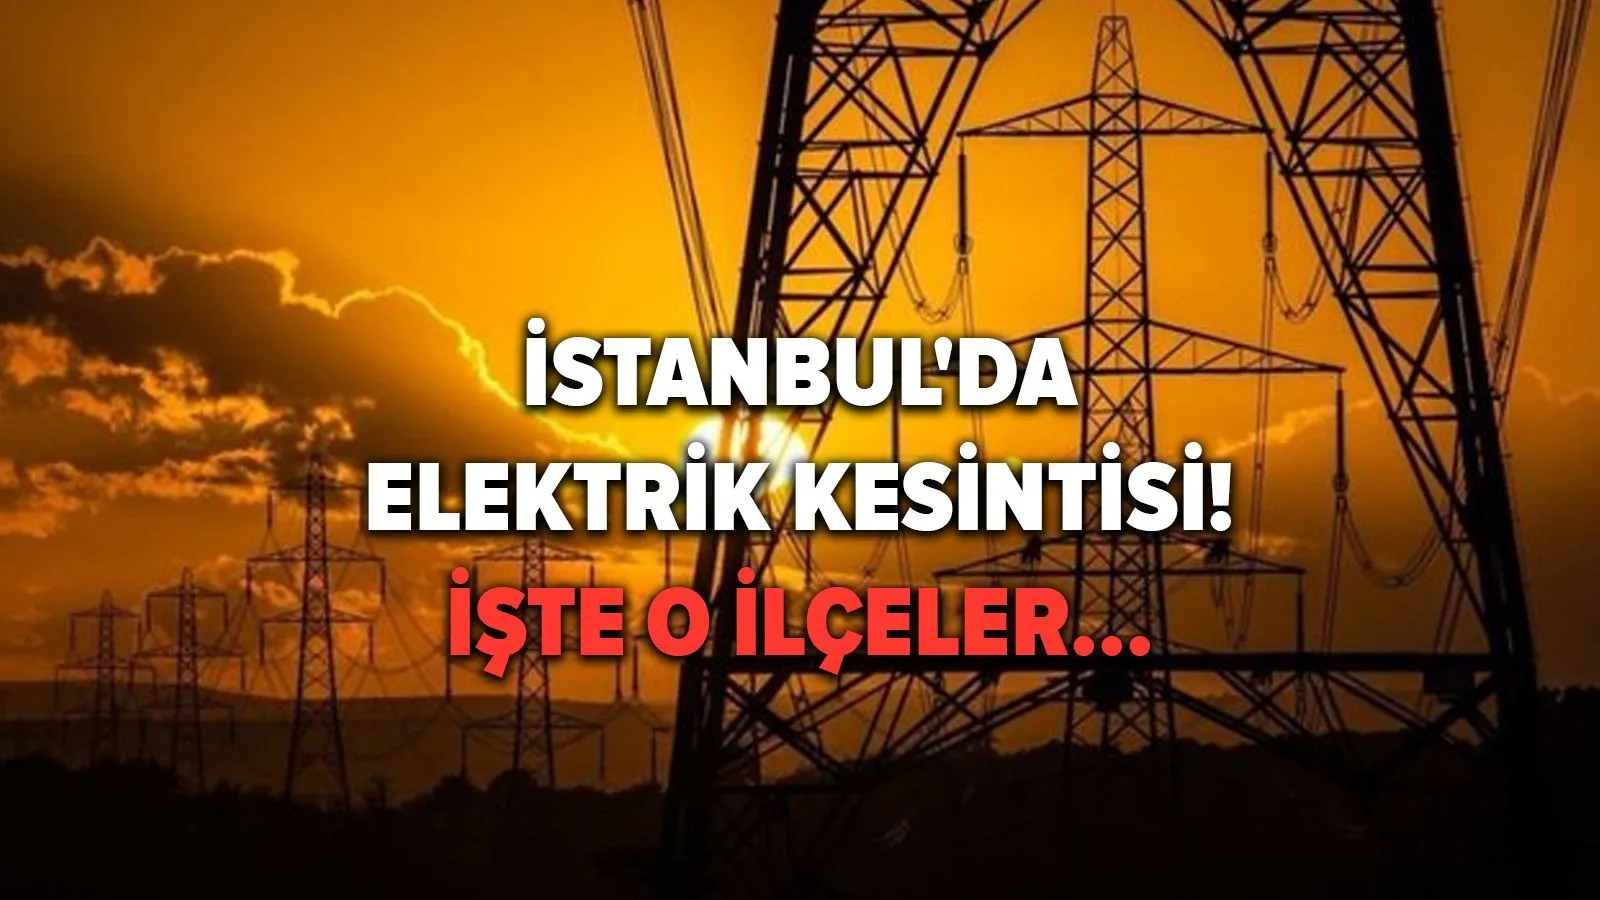 İstanbul’da 14 ilçede elektrik kesintisi! Çoğu ilçede 8 saati bulacak!.